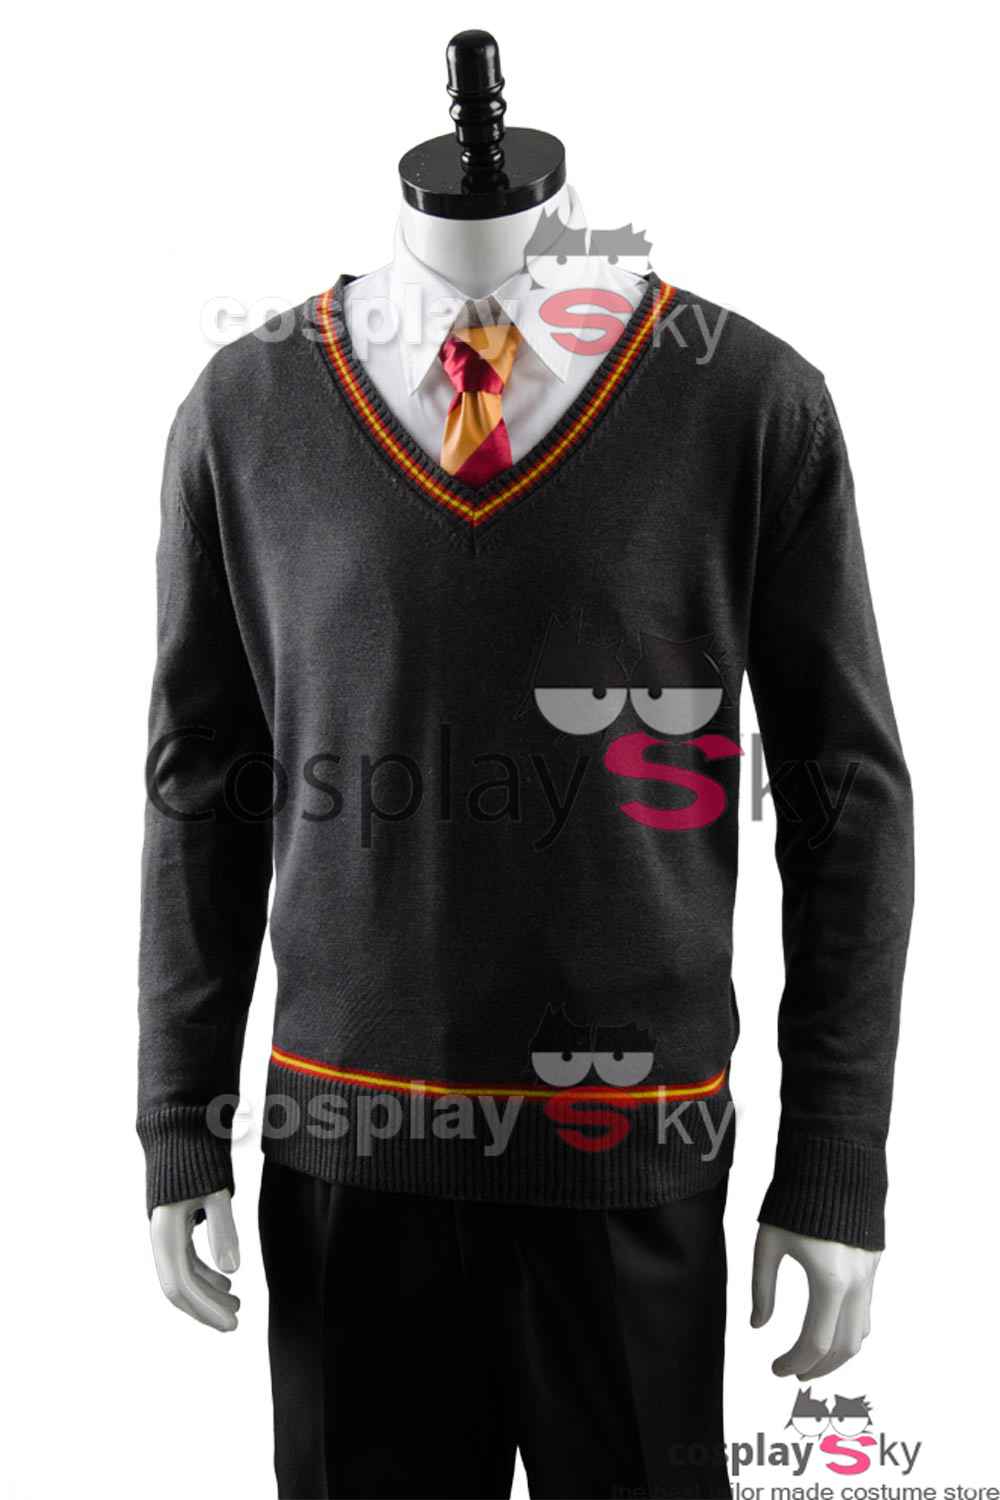 Harry Potter Gryffindor Robe Uniform Harry Potter Cosplay Kostüm Erwachsene Ver.